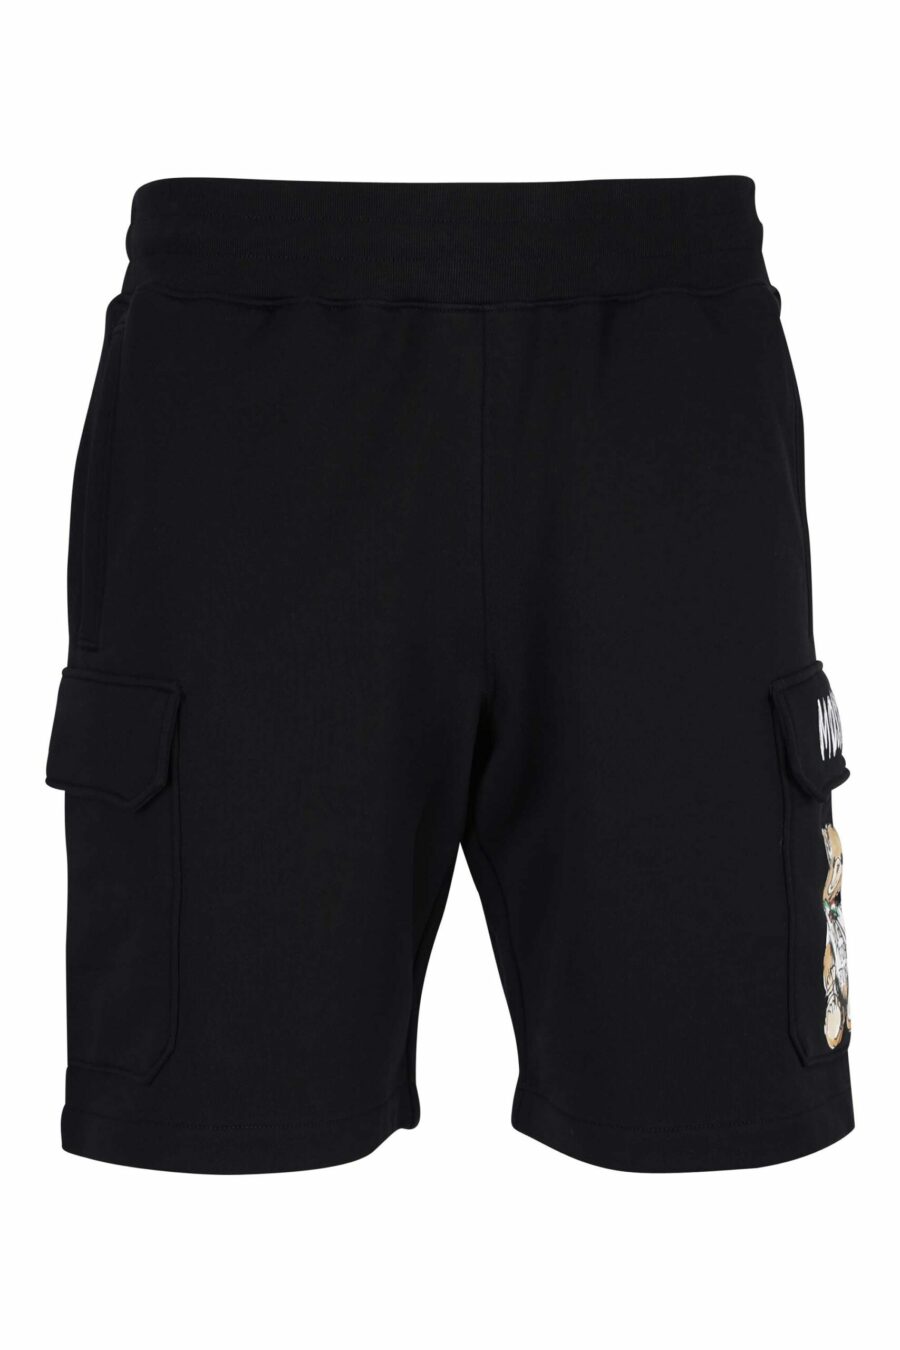 Pantalón de chándal negro de algodón orgánico estilo cargo y logo oso dibujo - 667113767390 scaled